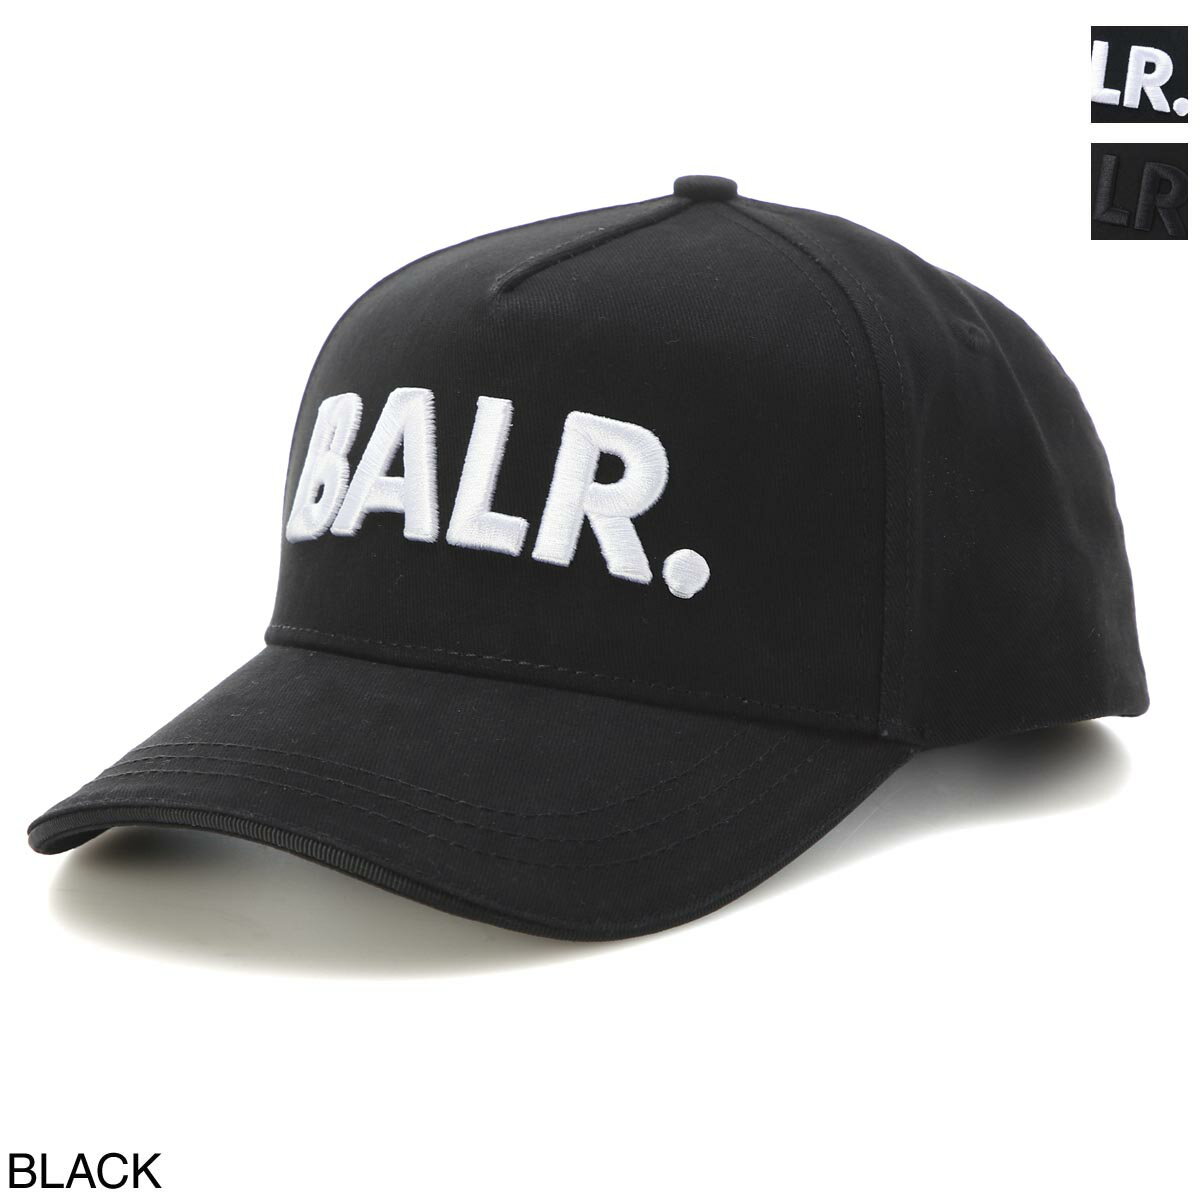 ボーラー BALR. ベースボールキャップ 帽子 メンズ classic cotton cap black white CLASSIC COTTON CAP